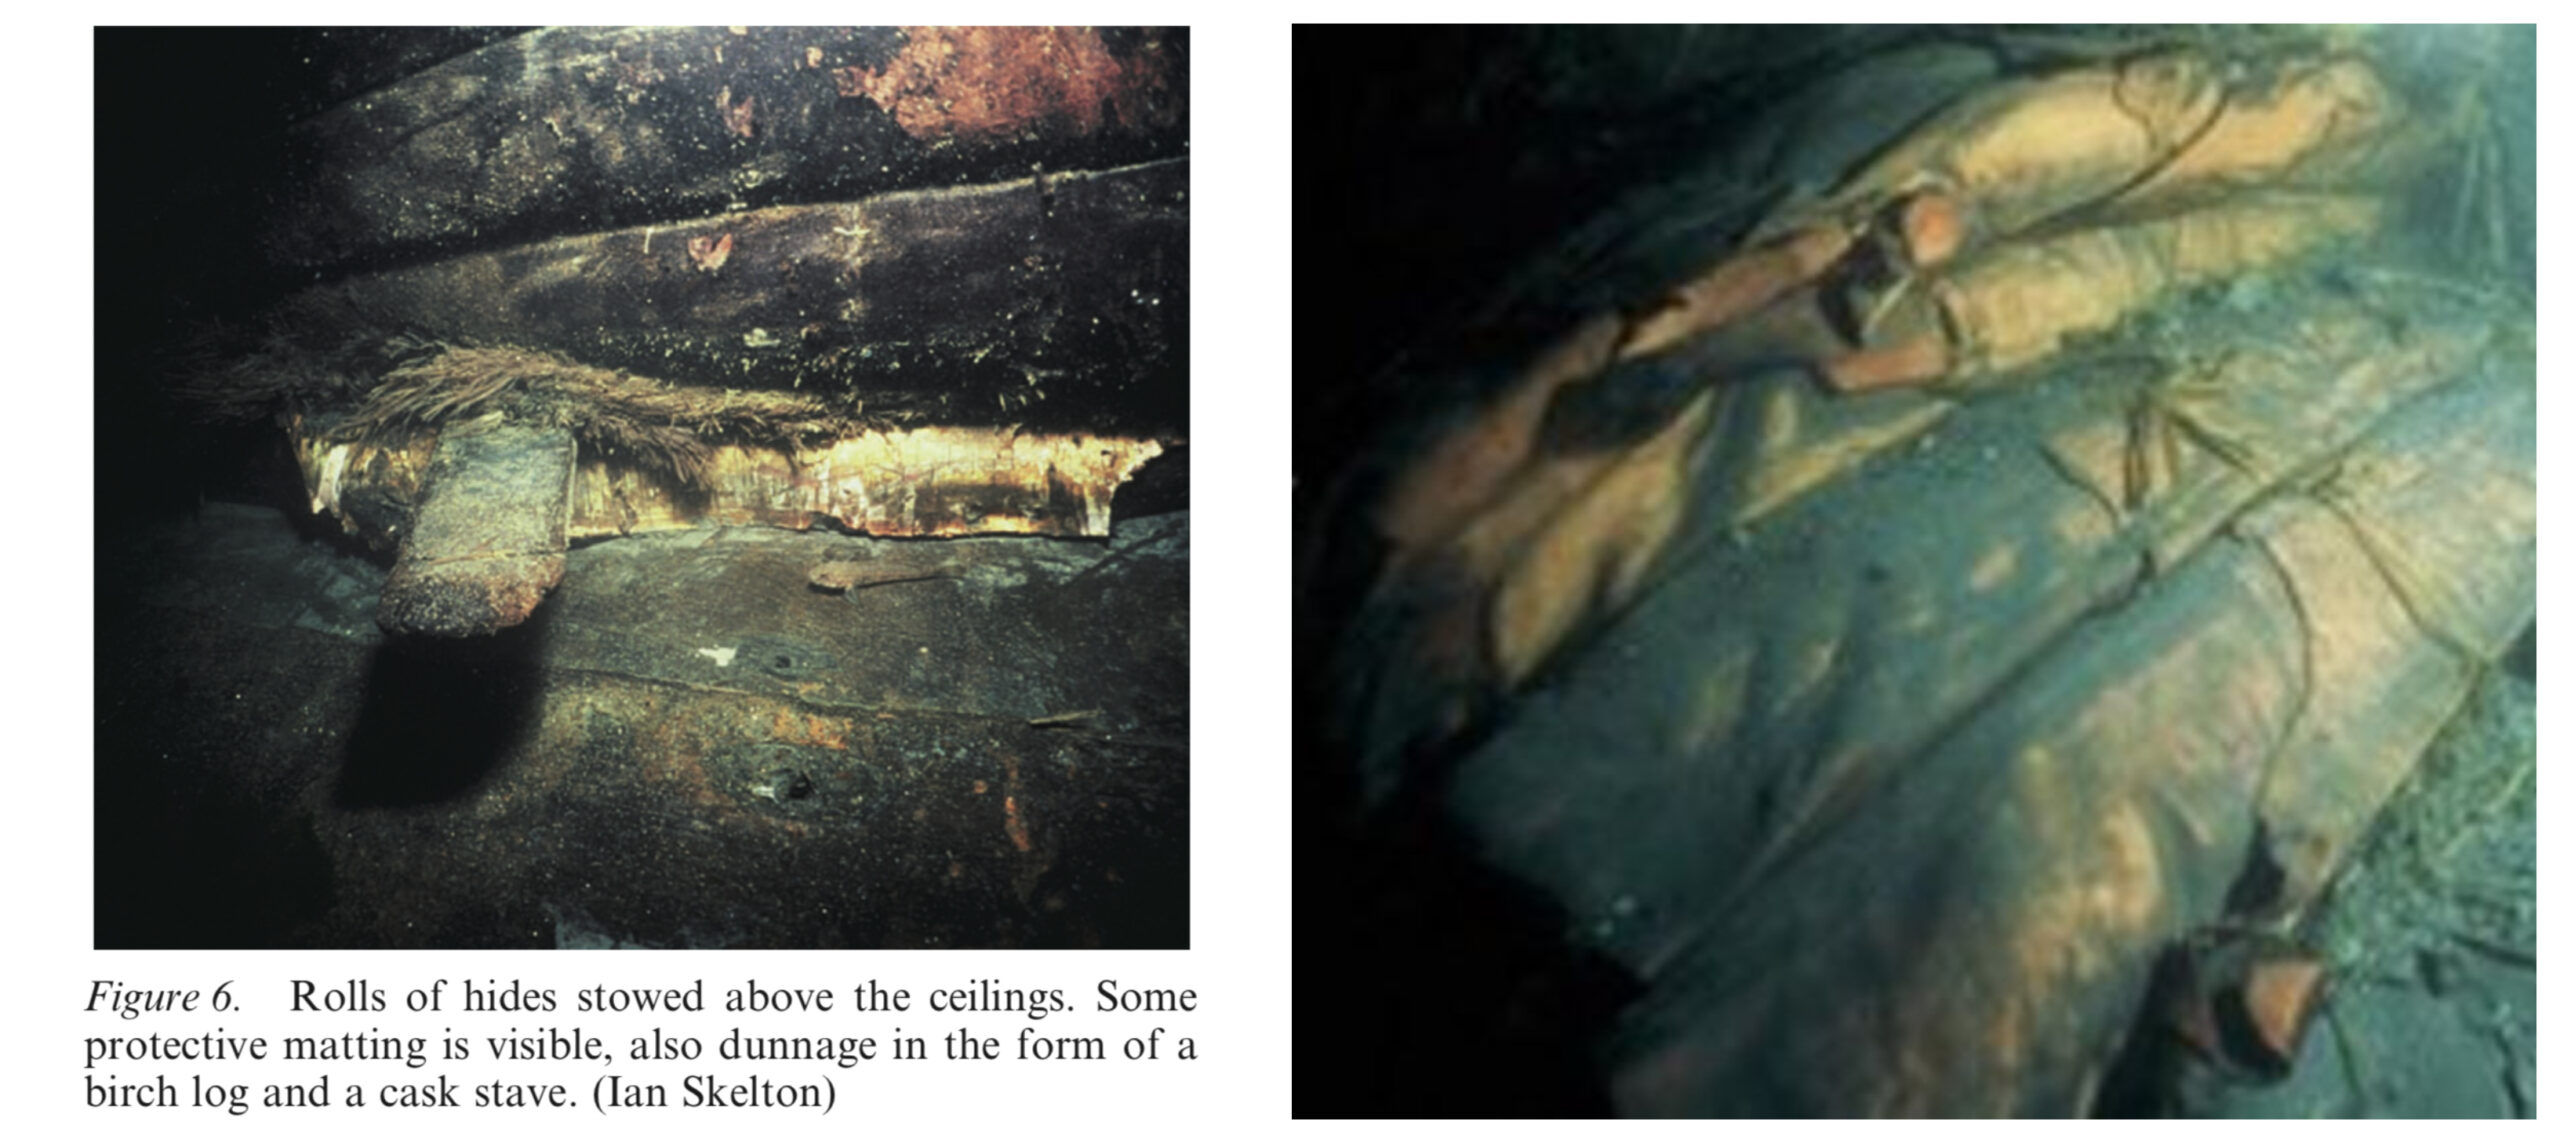 Le cuir tel qu’il est apparu sous l’eau aux plongeurs du BSAC (Source : Rapport d’excavation, Ian Skelton)